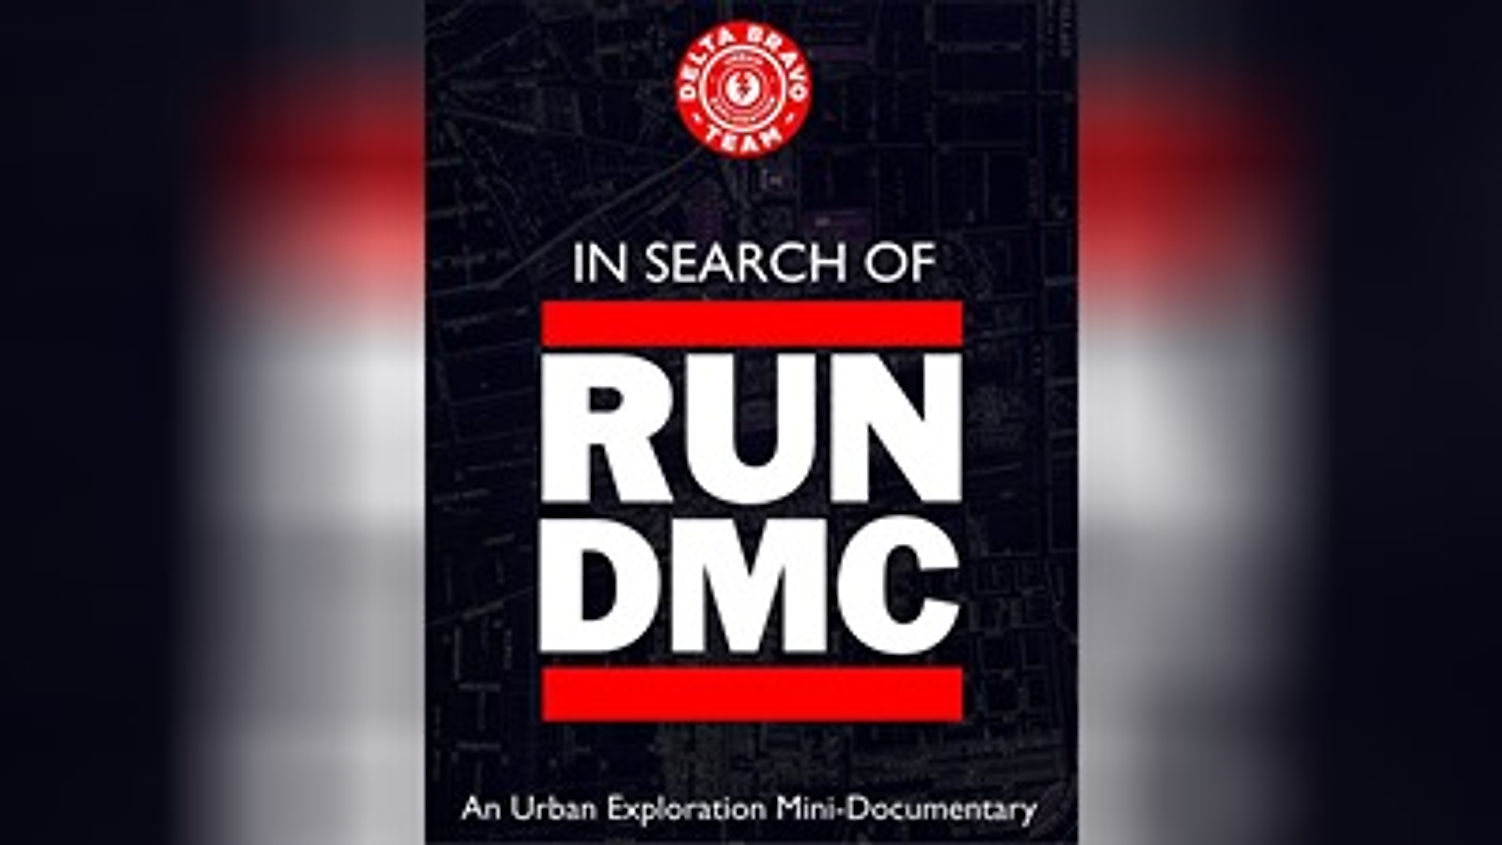 "In Search of RUN DMC"